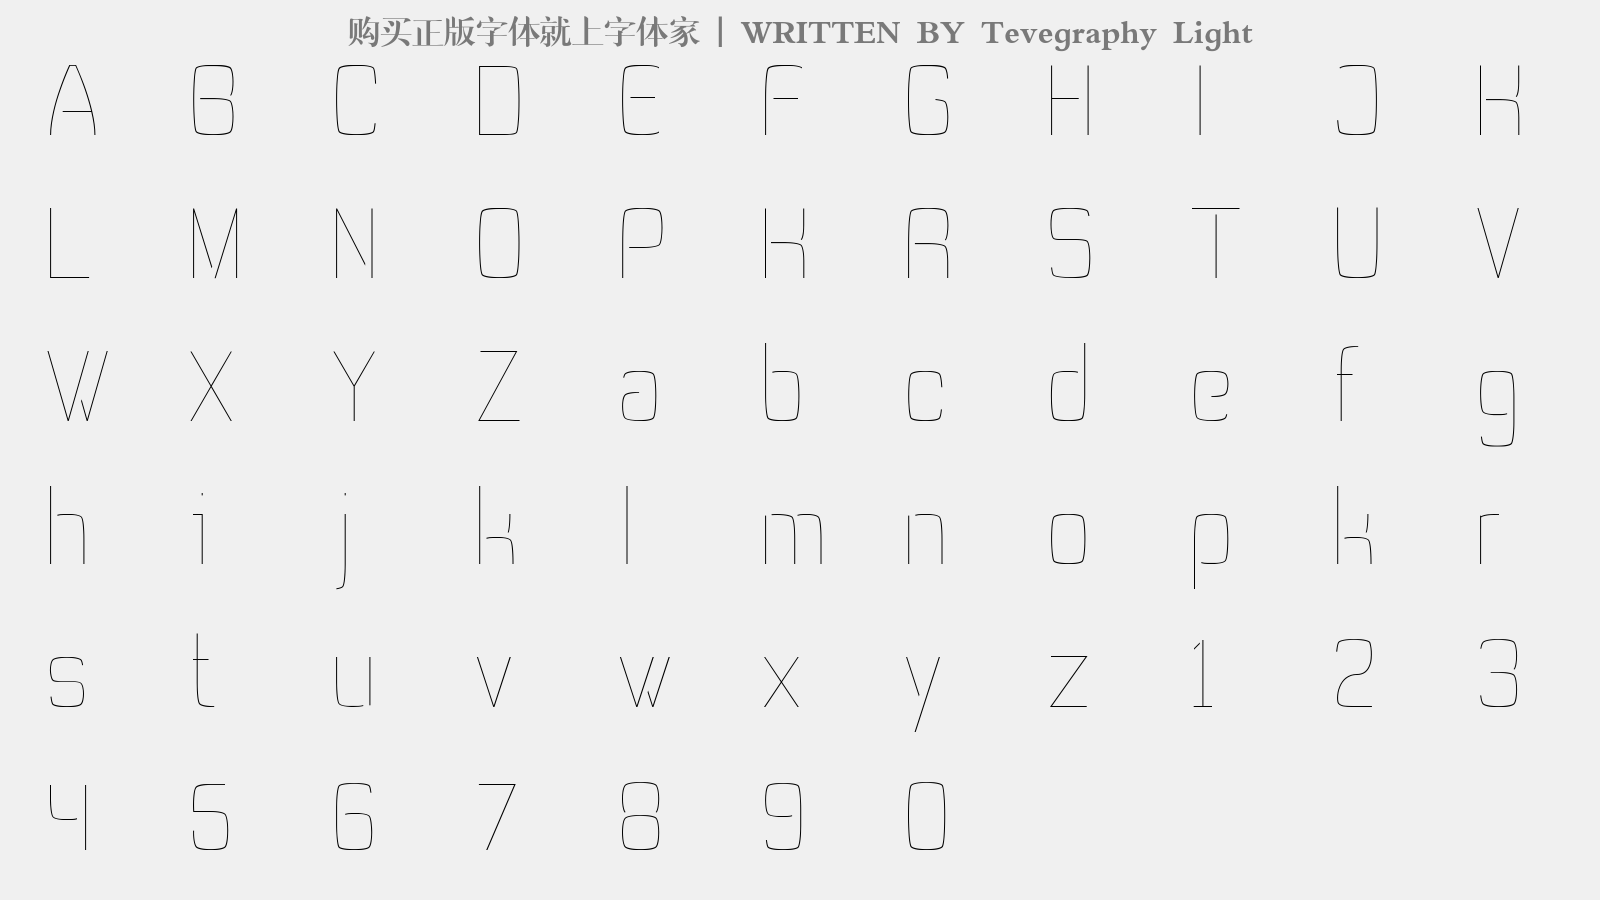 Tevegraphy Light - 大写字母/小写字母/数字